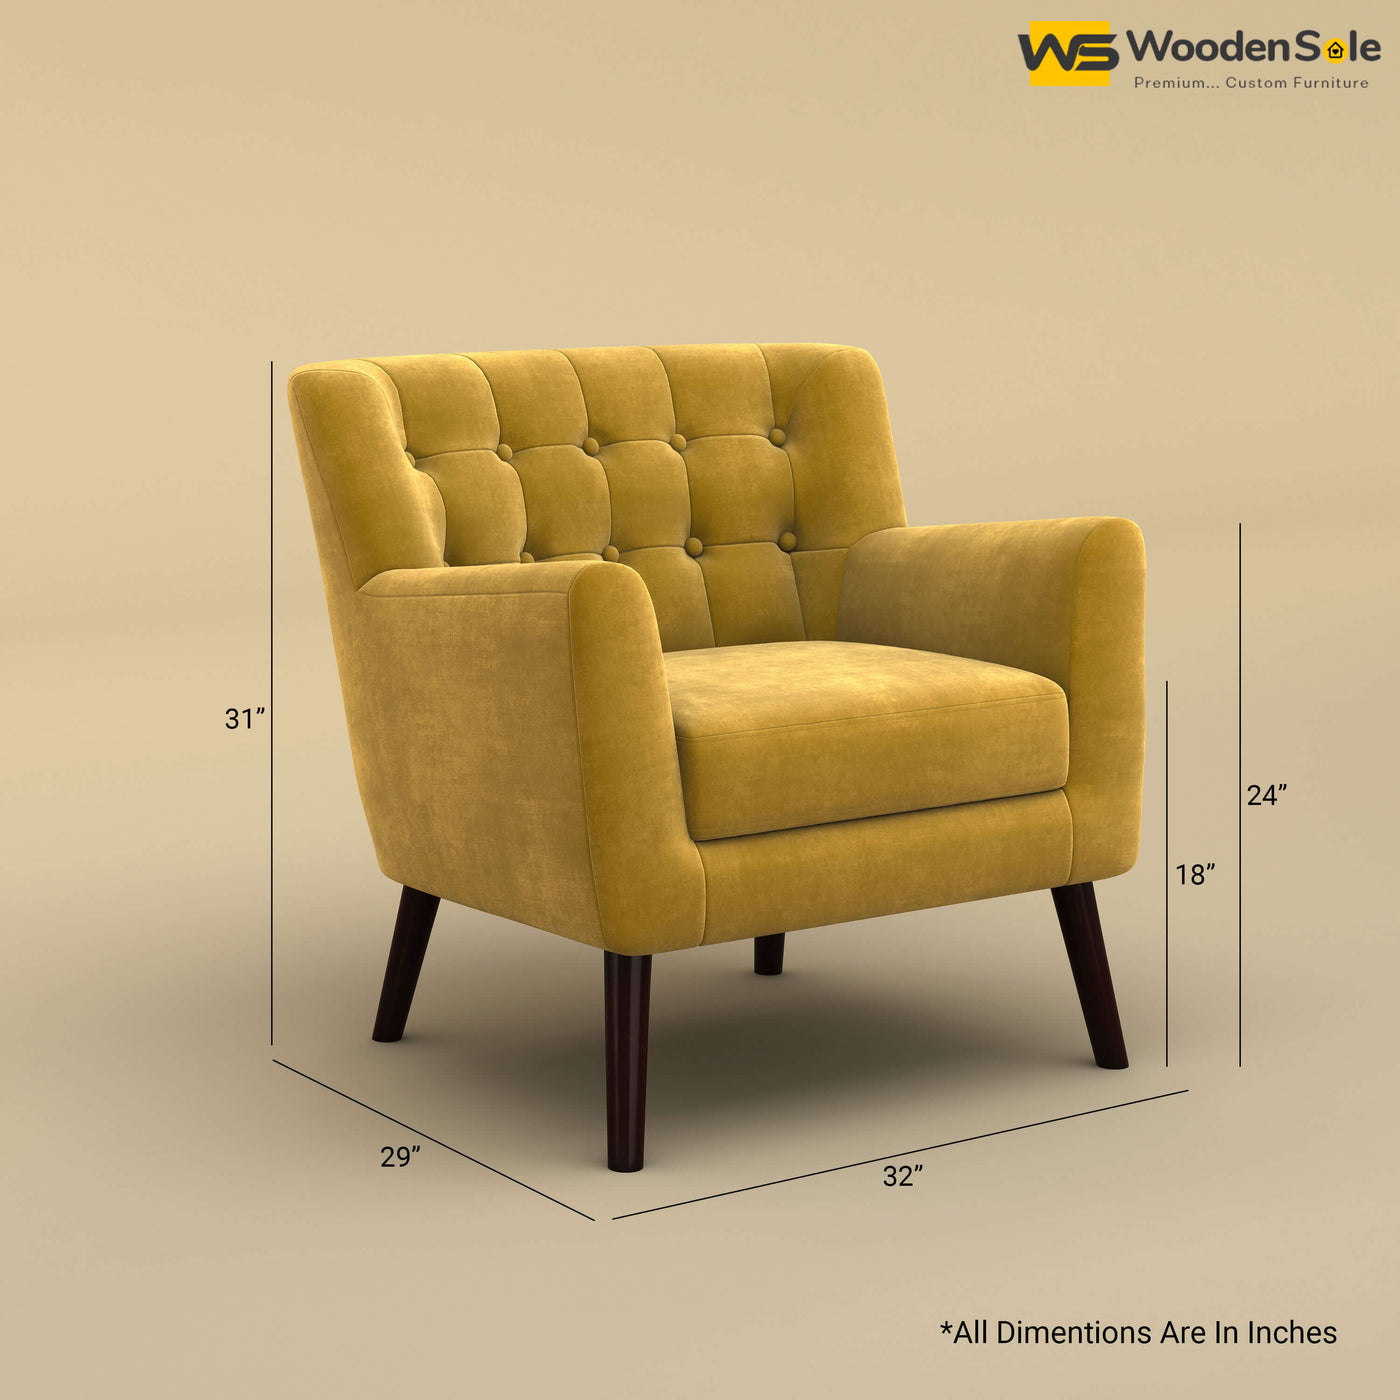 Figo Tufted Lounge Chair (Velvet, Mustard Yellow)